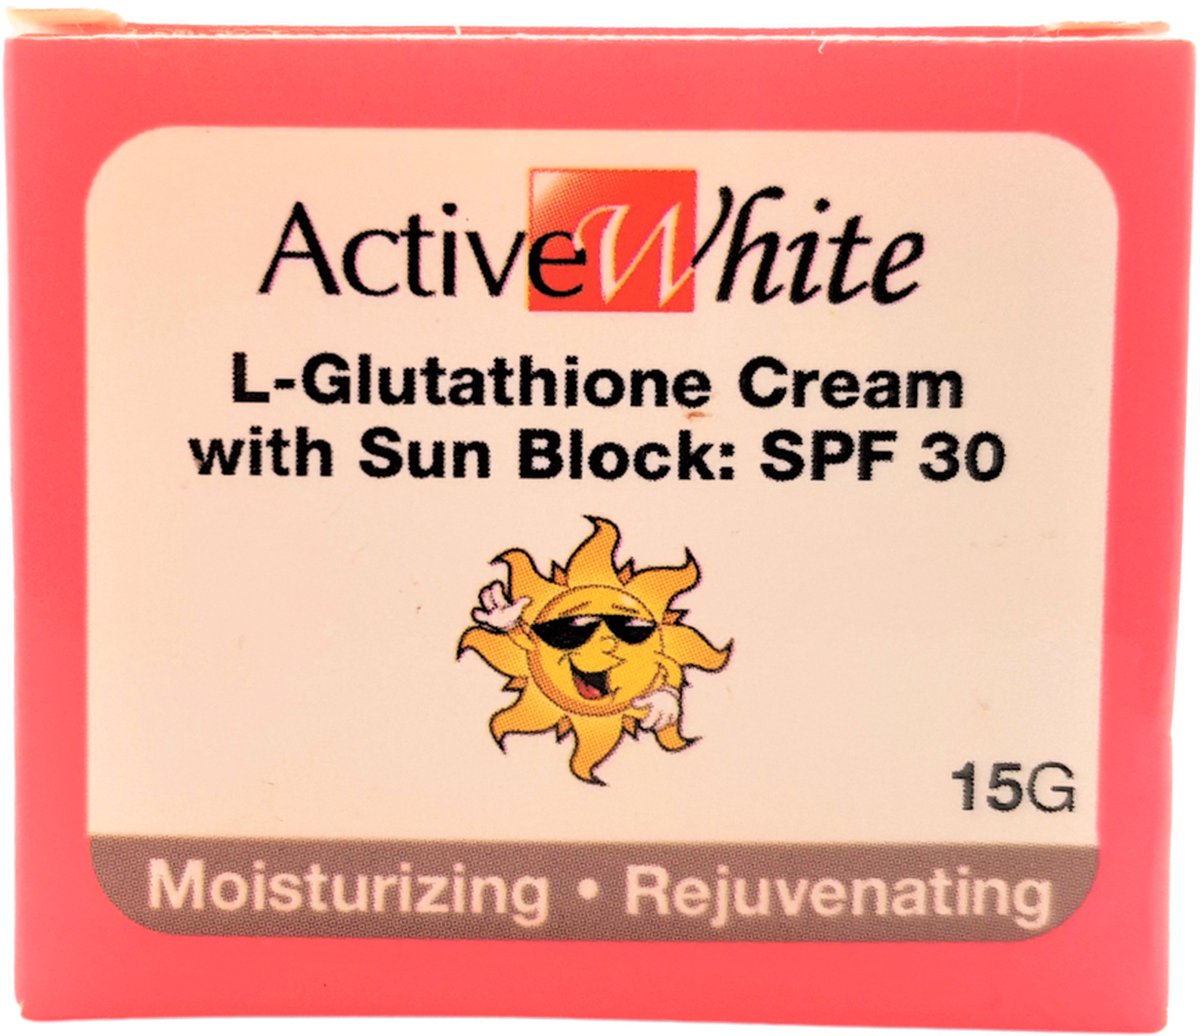 ActiveWhite L-Glutathione Cream met Sun Block, 15 gram